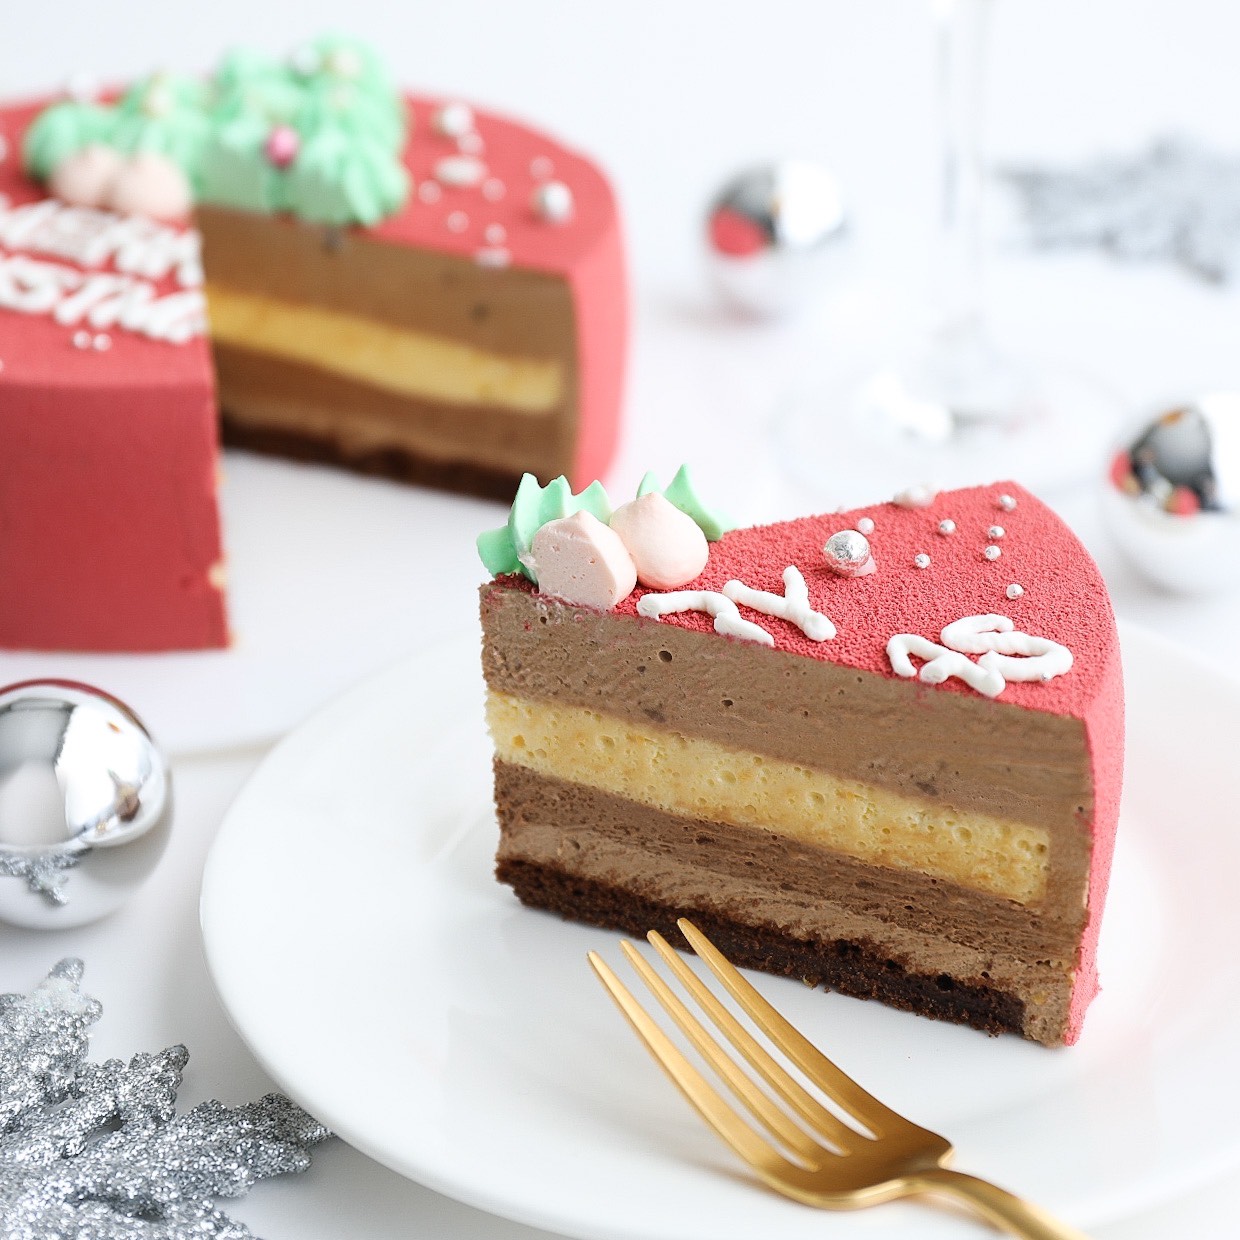 クリスマスケーキ ツリーのセンイルケーキ チョコレートムースケーキ Lime D Or ライムドール Cake Jp